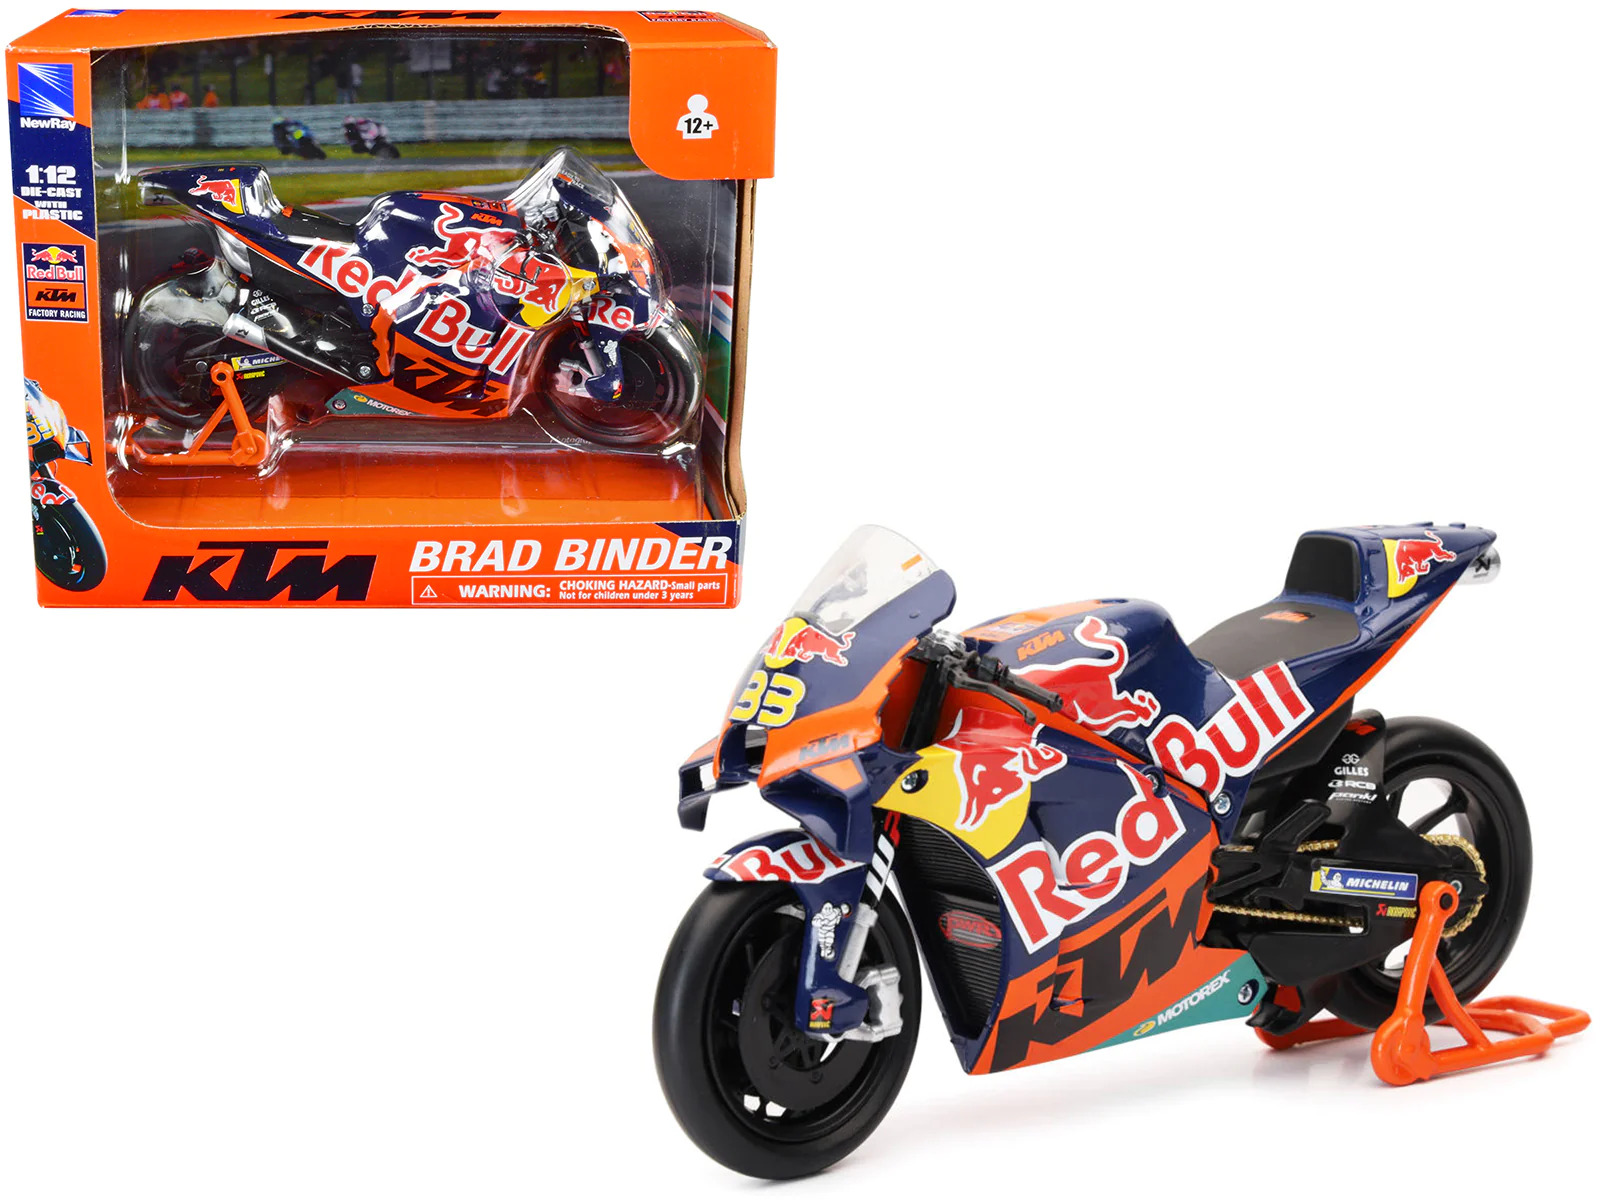 KTM RC16 Motorcycle 33 Brad Binder MotoGP Bull Factory Racing 1/12 Diecast Model